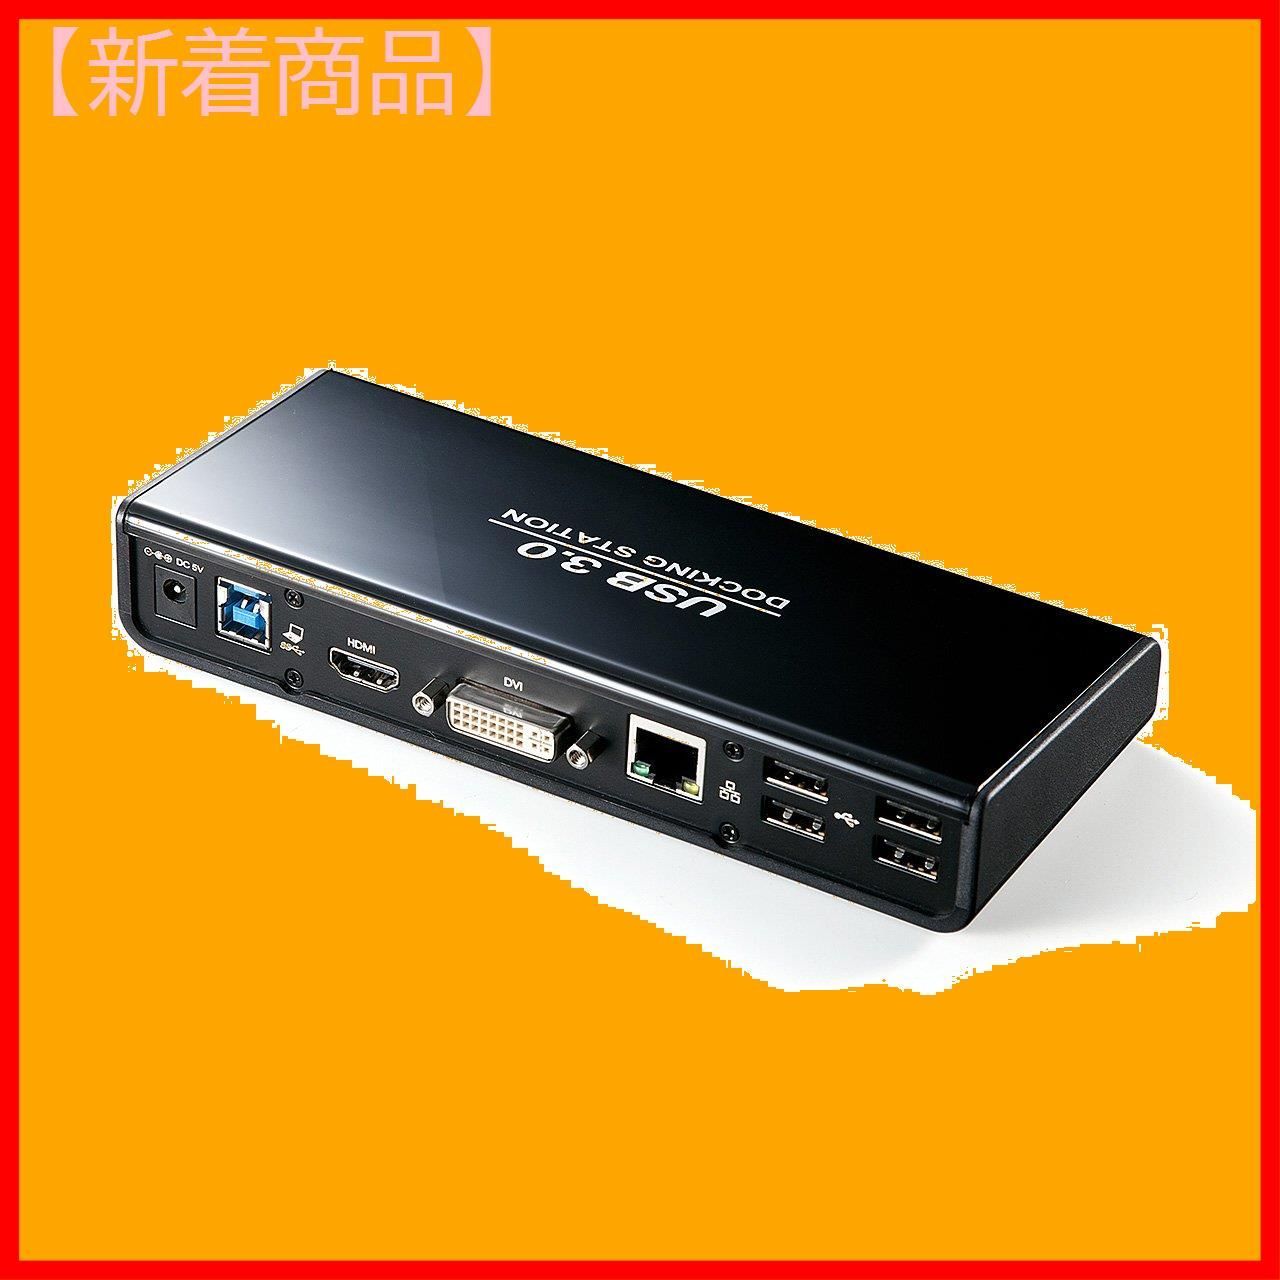 新着商品】USBハブ ギガビット有線LAN 出力 DVI 400-VGA0 アニマルショップ メルカリ